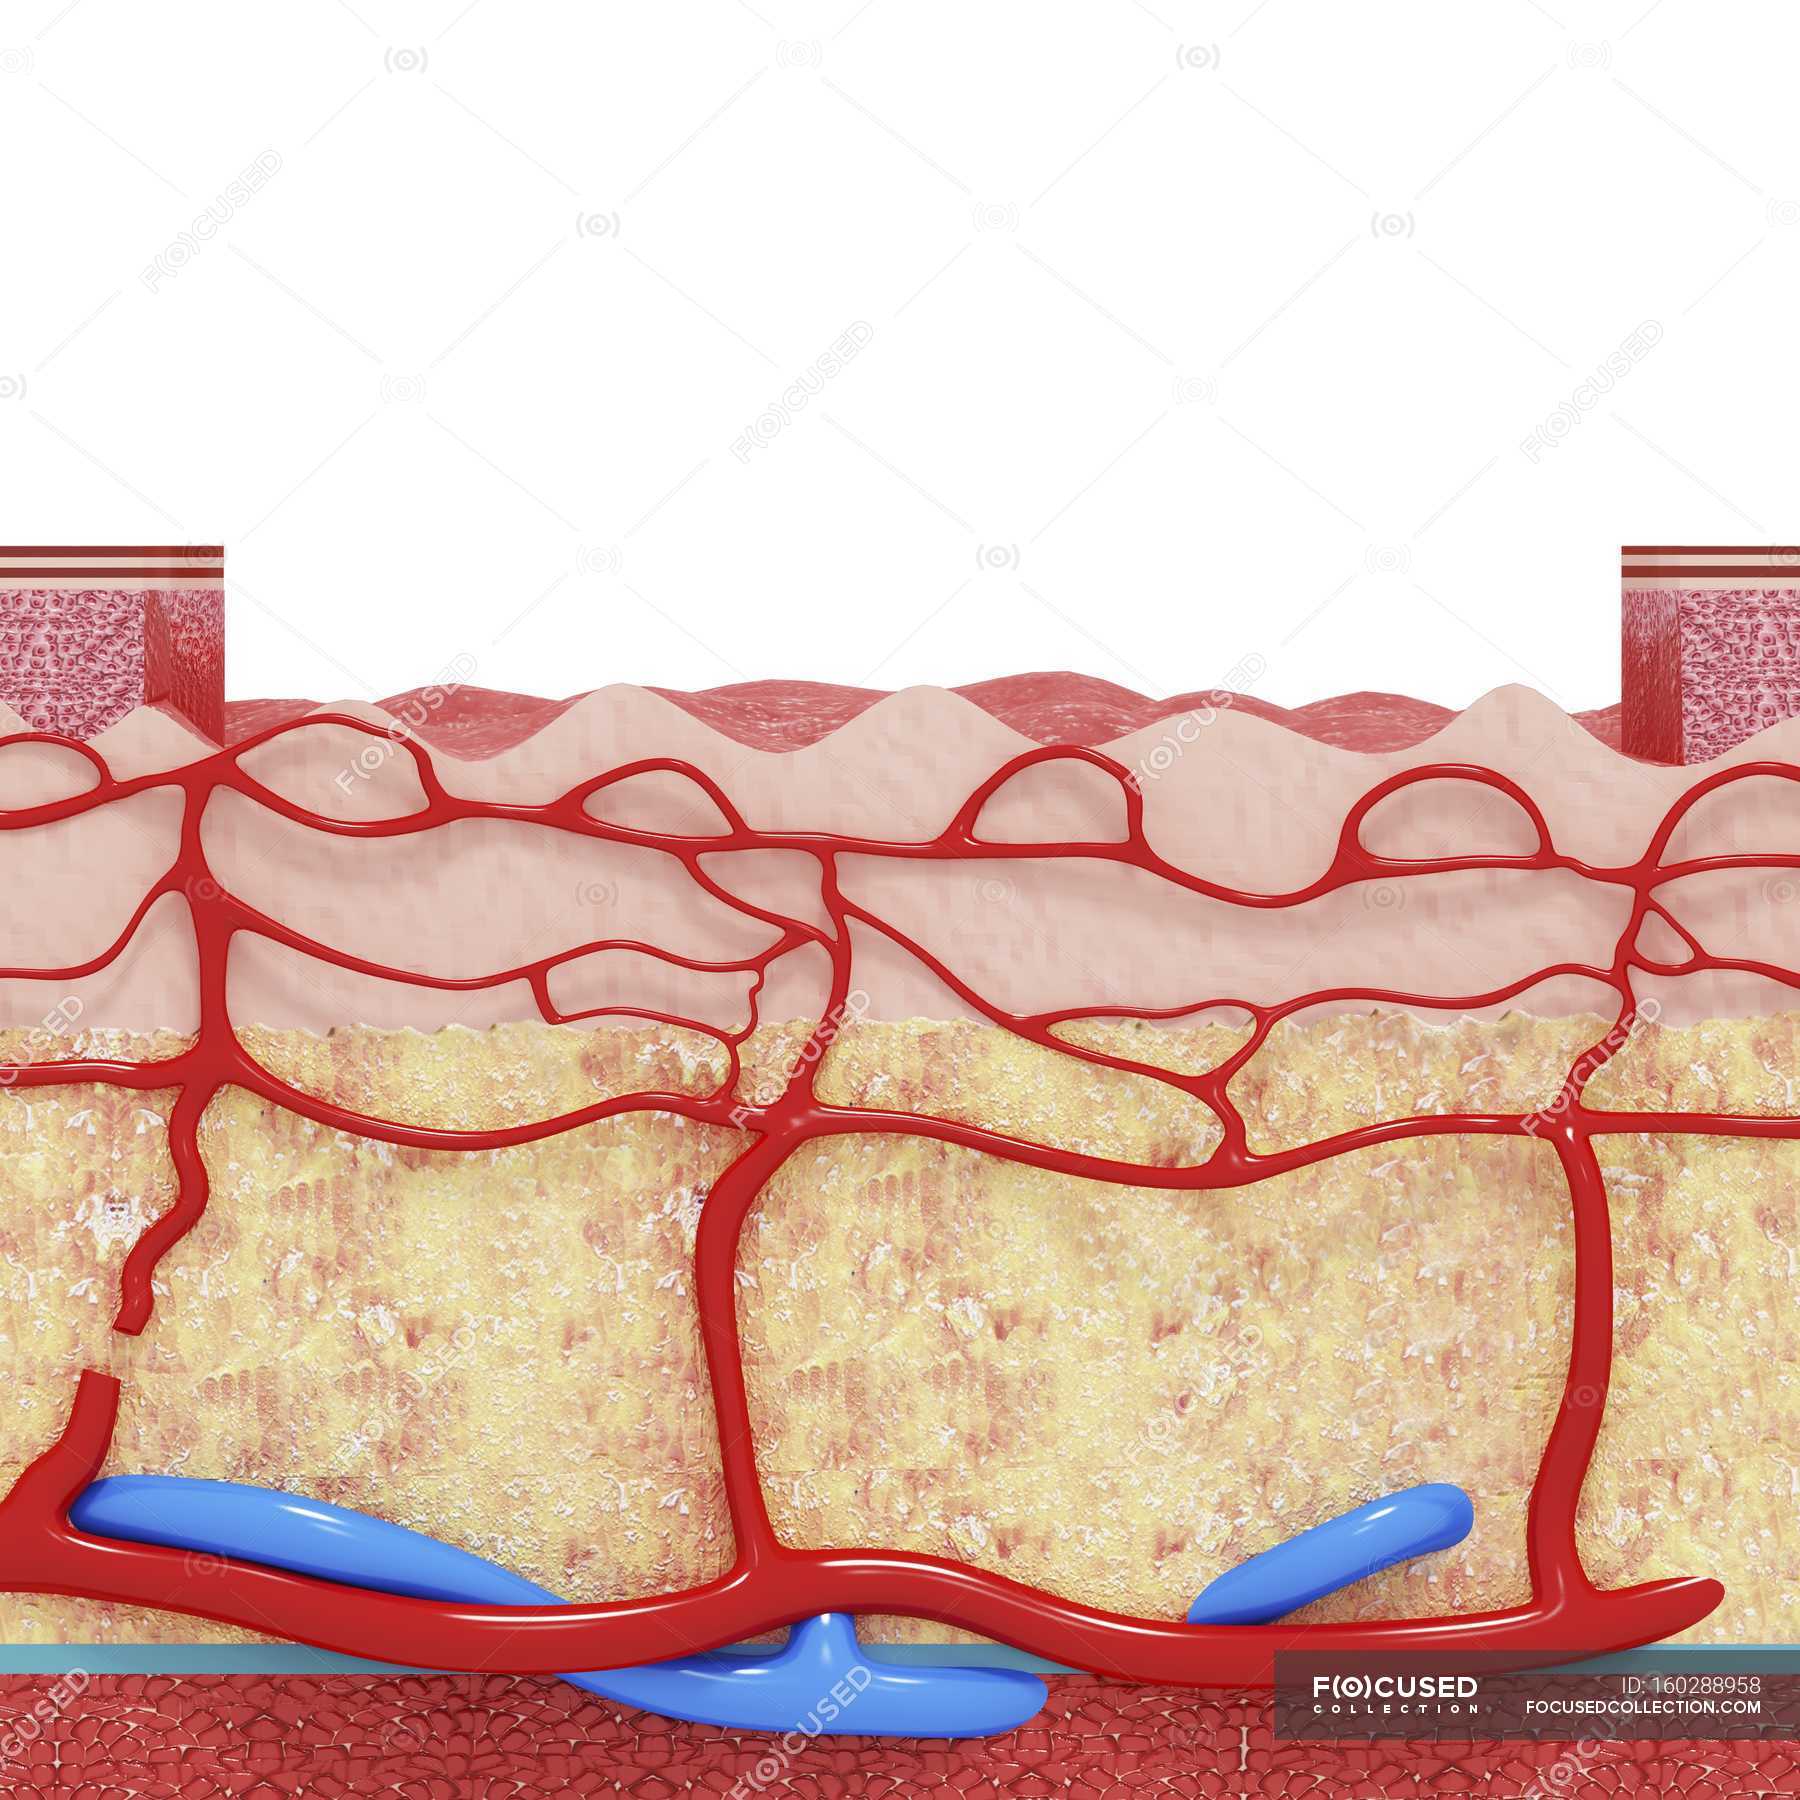 blood vessels in skin